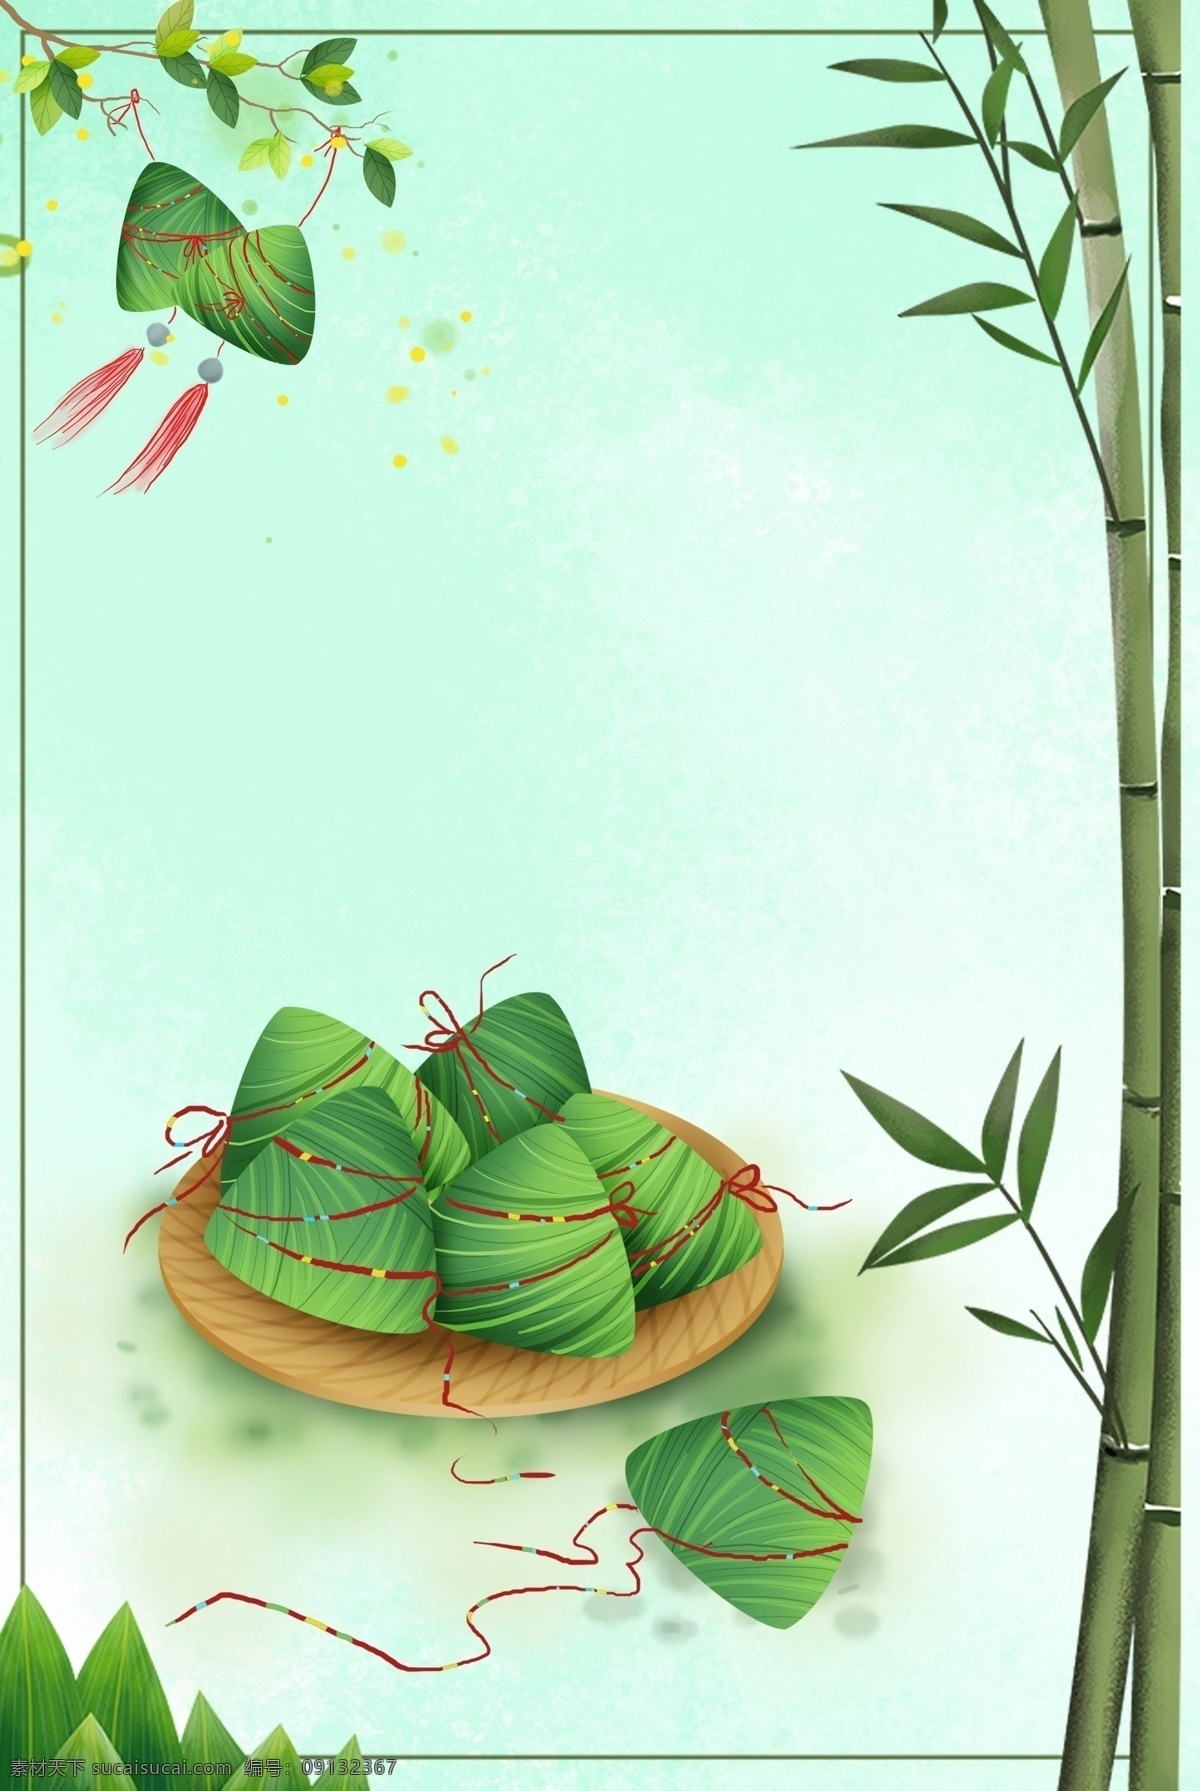 传统 端午节 粽子 节 背景 背景图片 粽子节 绿色 竹子 唯美 节日